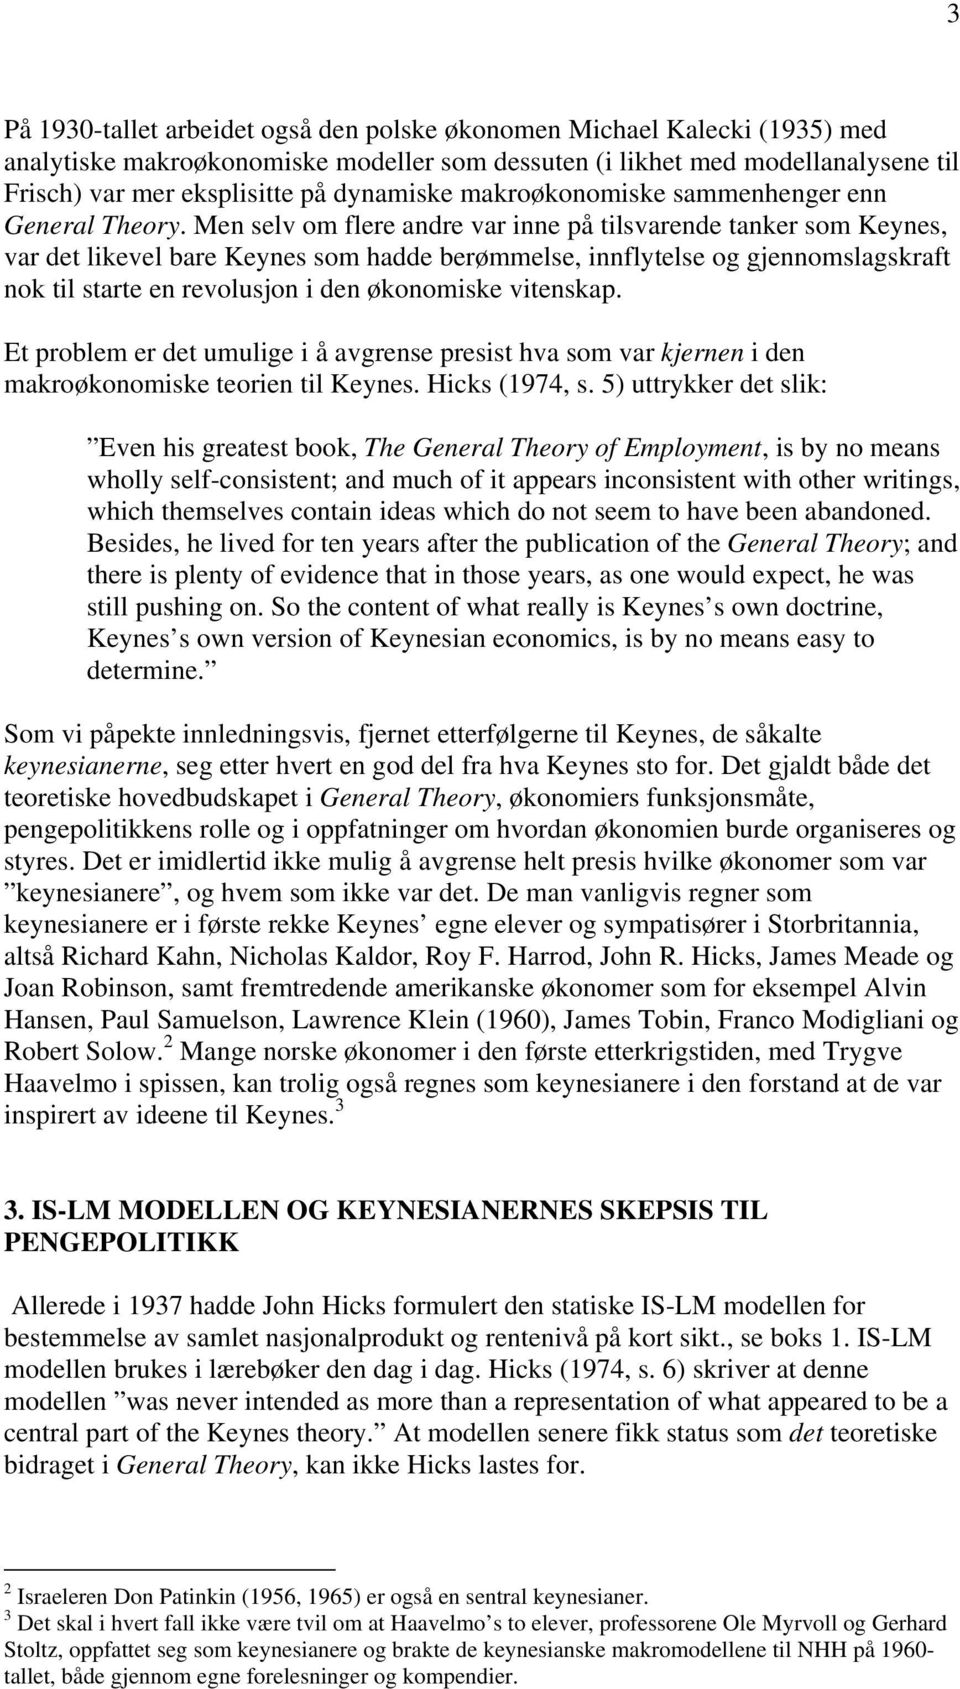 Men selv om flere andre var inne på tilsvarende tanker som Keynes, var det likevel bare Keynes som hadde berømmelse, innflytelse og gjennomslagskraft nok til starte en revolusjon i den økonomiske